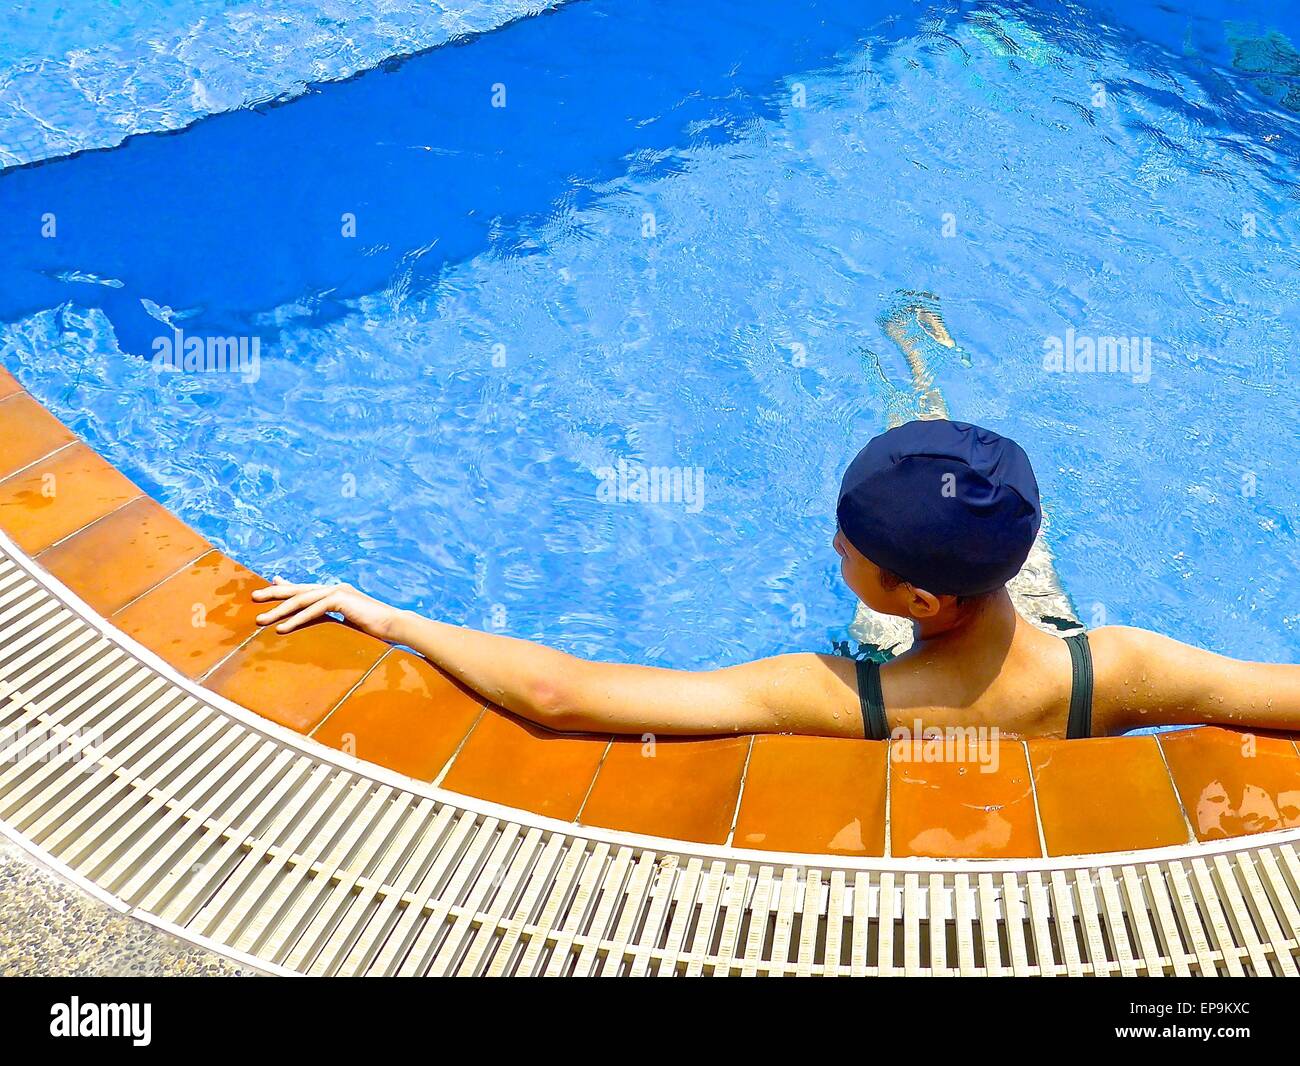 Jeune fille pratique la natation dans une piscine Banque D'Images